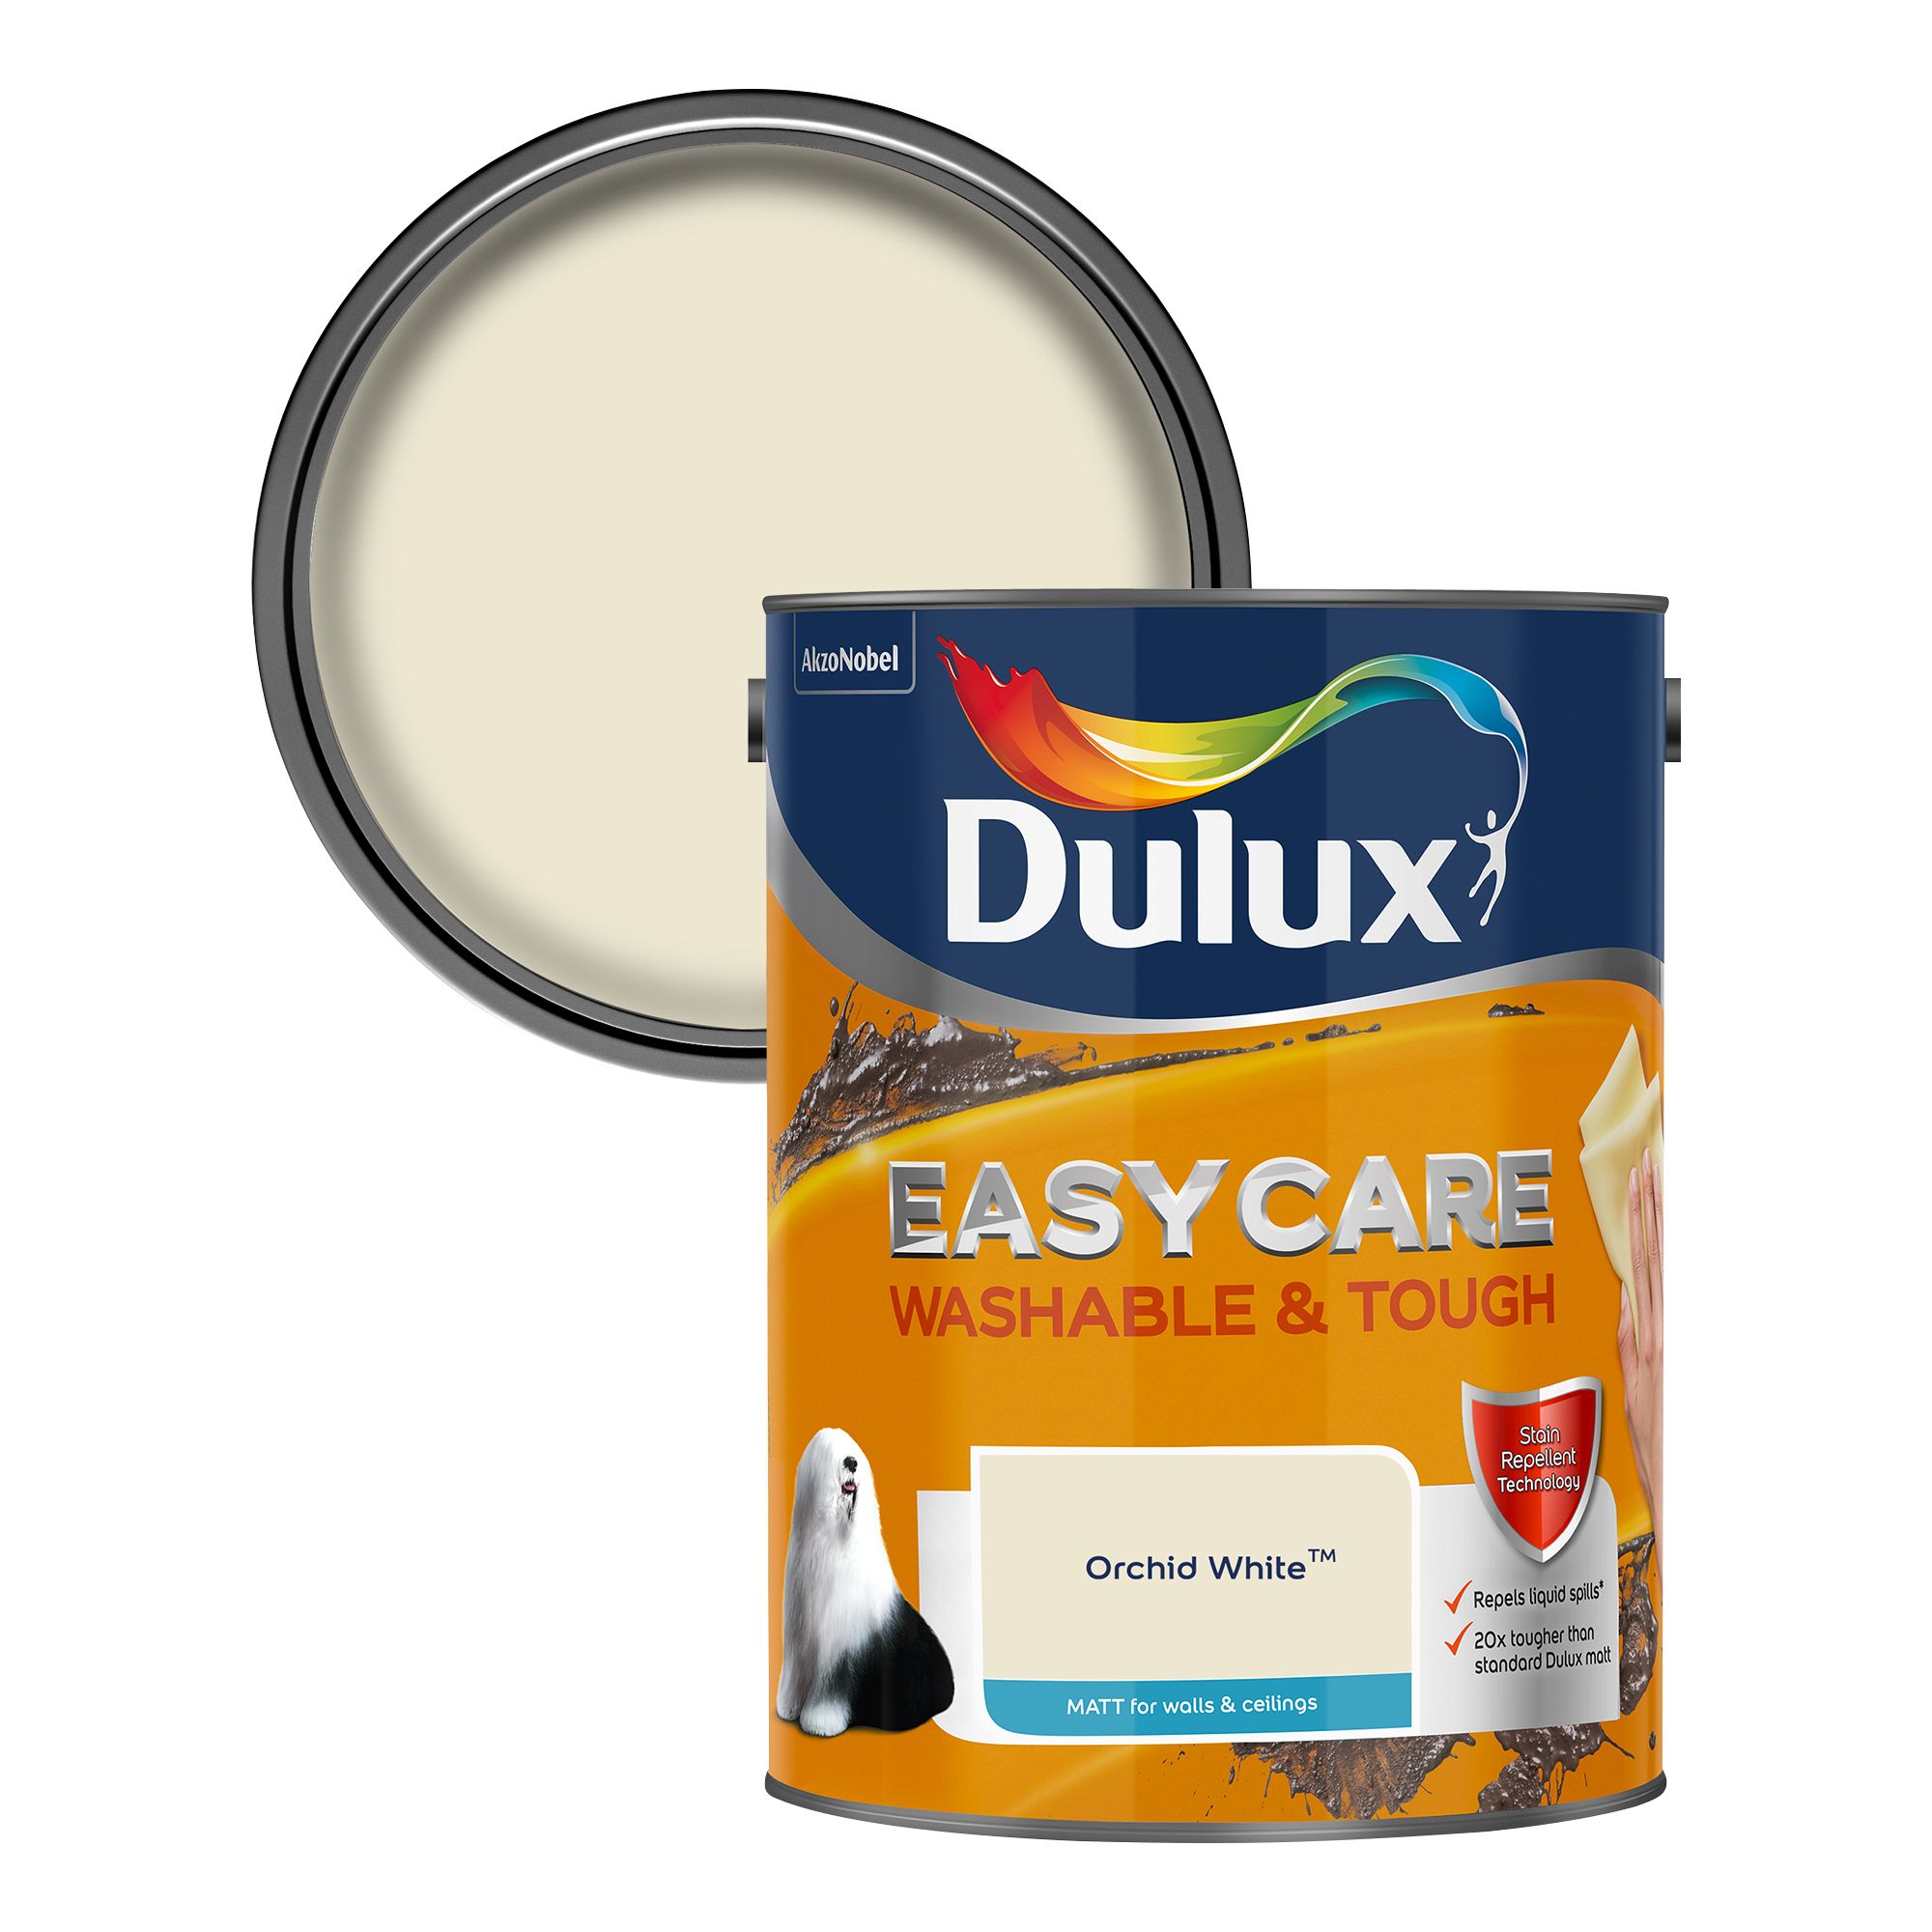 Dulux Easycare Orchid white Matt Emulsion paint, 5L | Departments | DIY